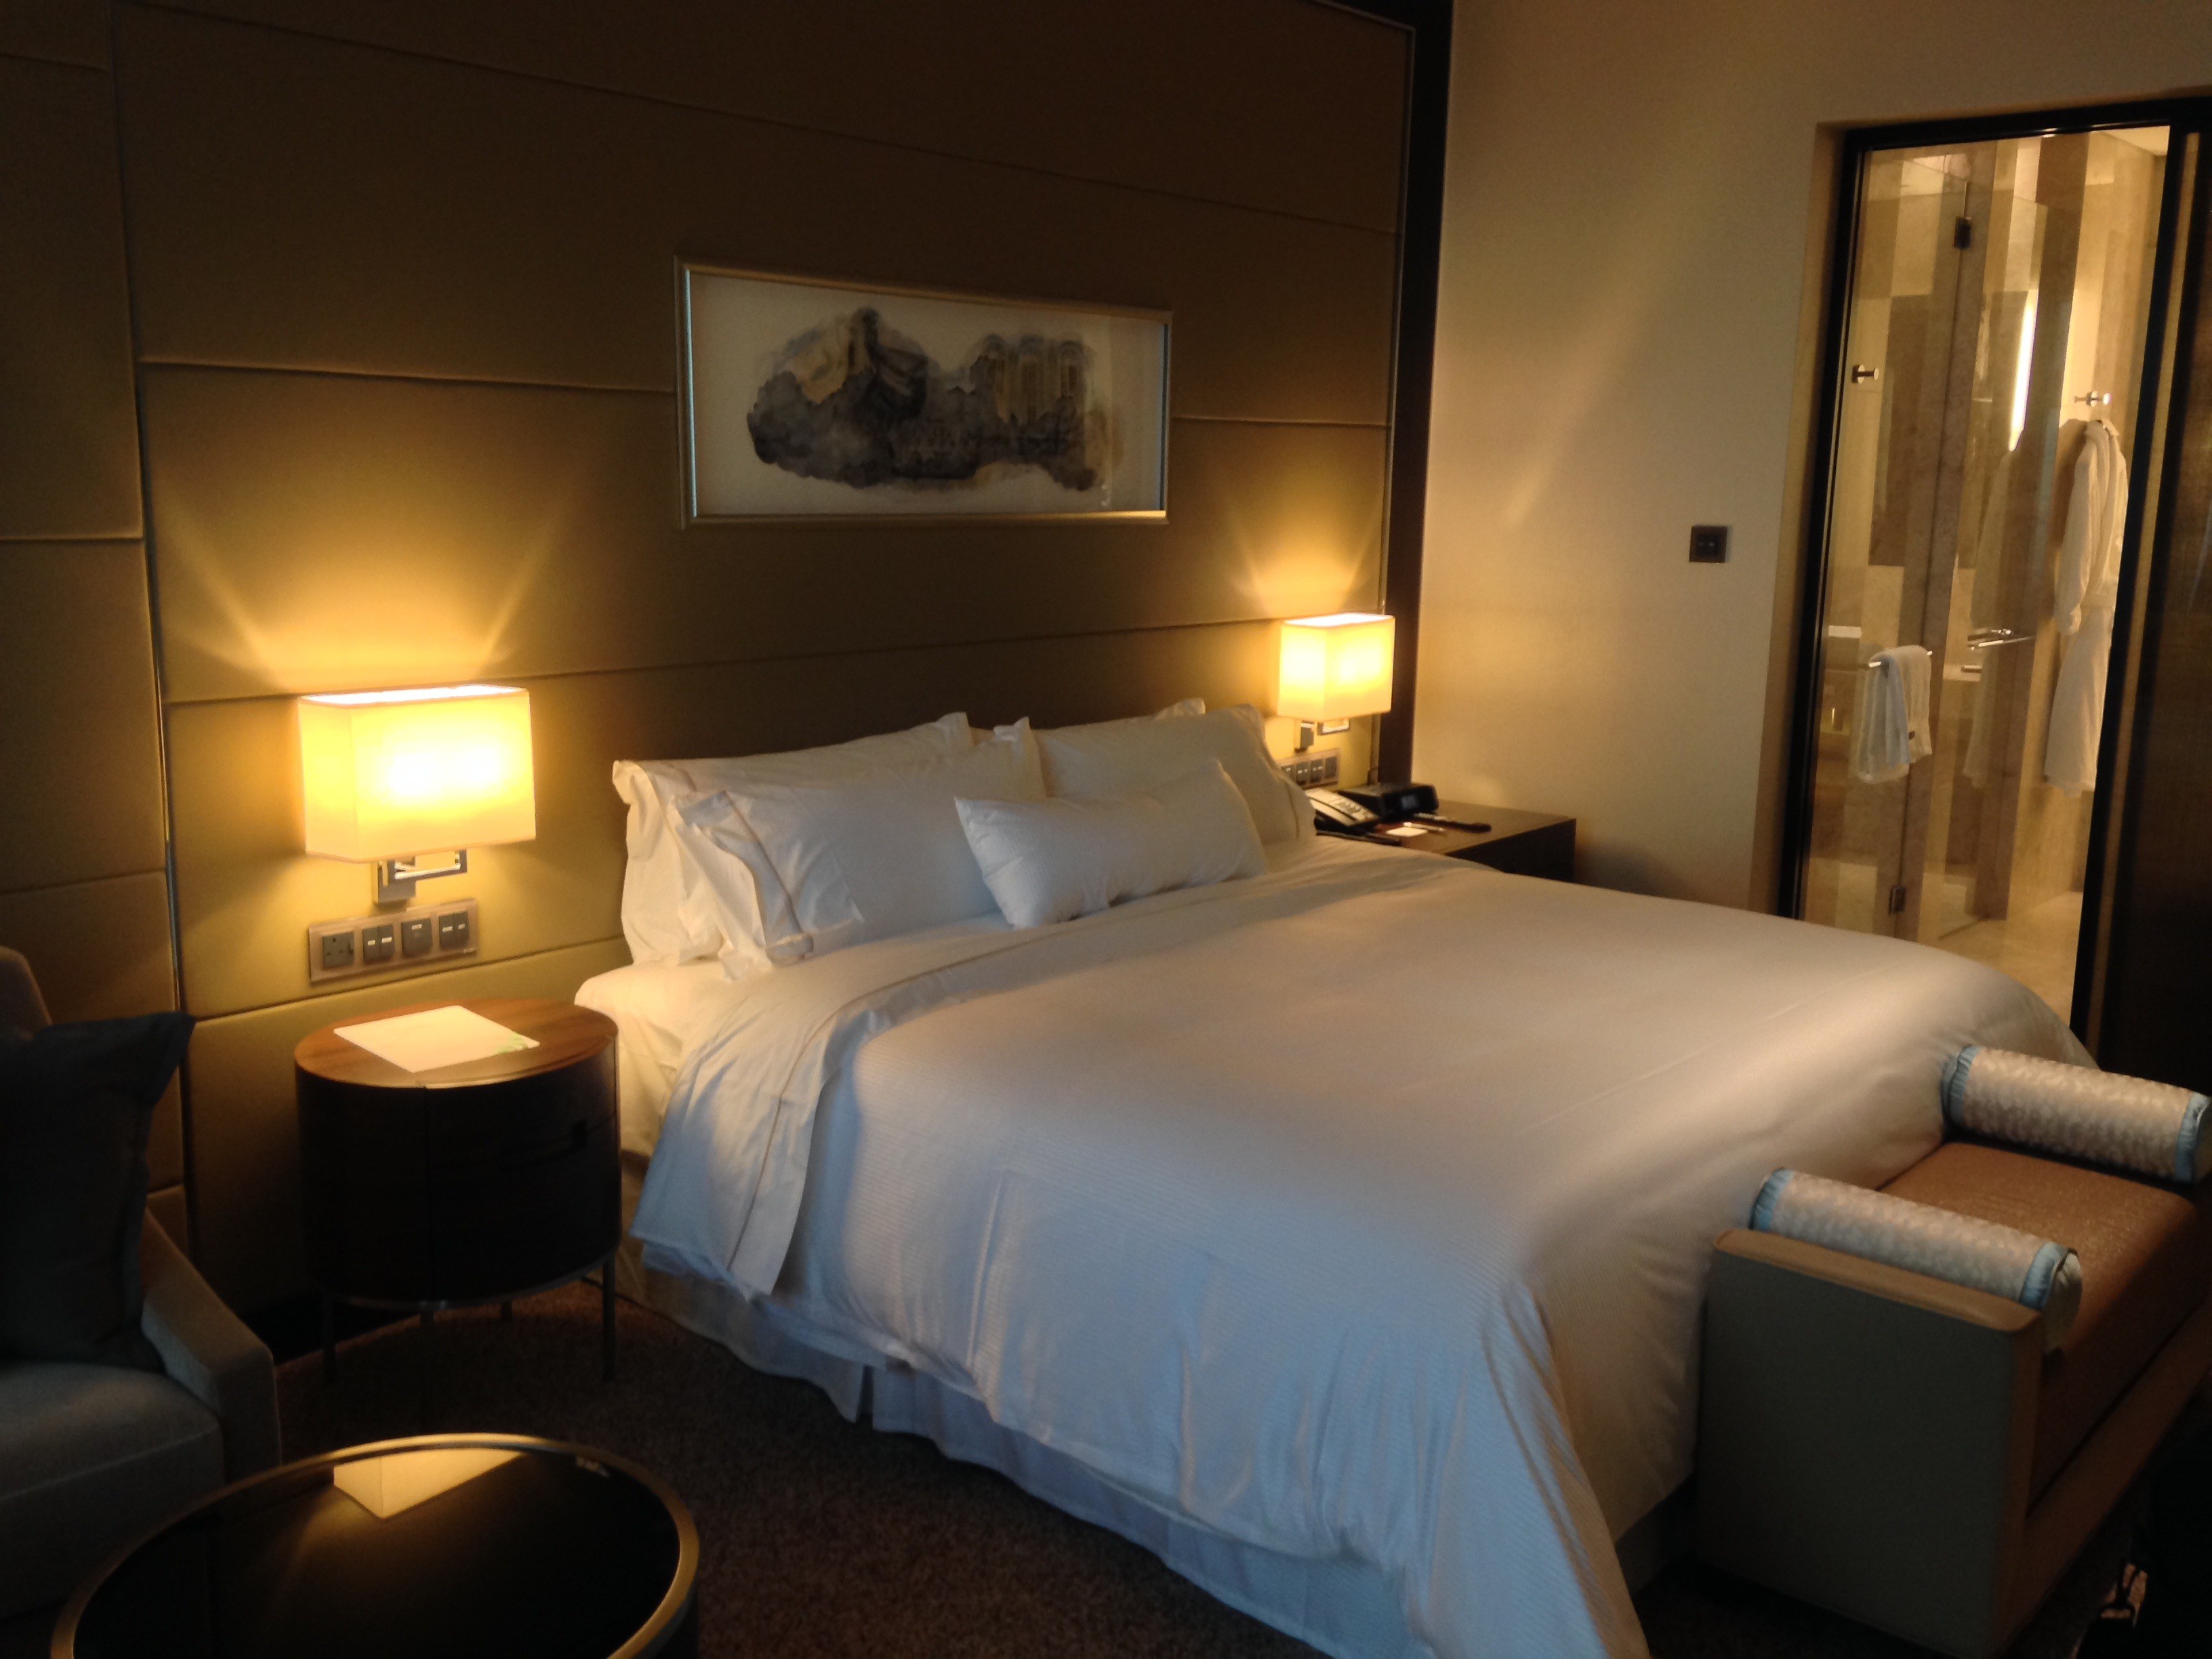 Last night hotel. Комната с кроватью. Кровать в отеле. Кровати для гостиниц. Спальня в отеле.